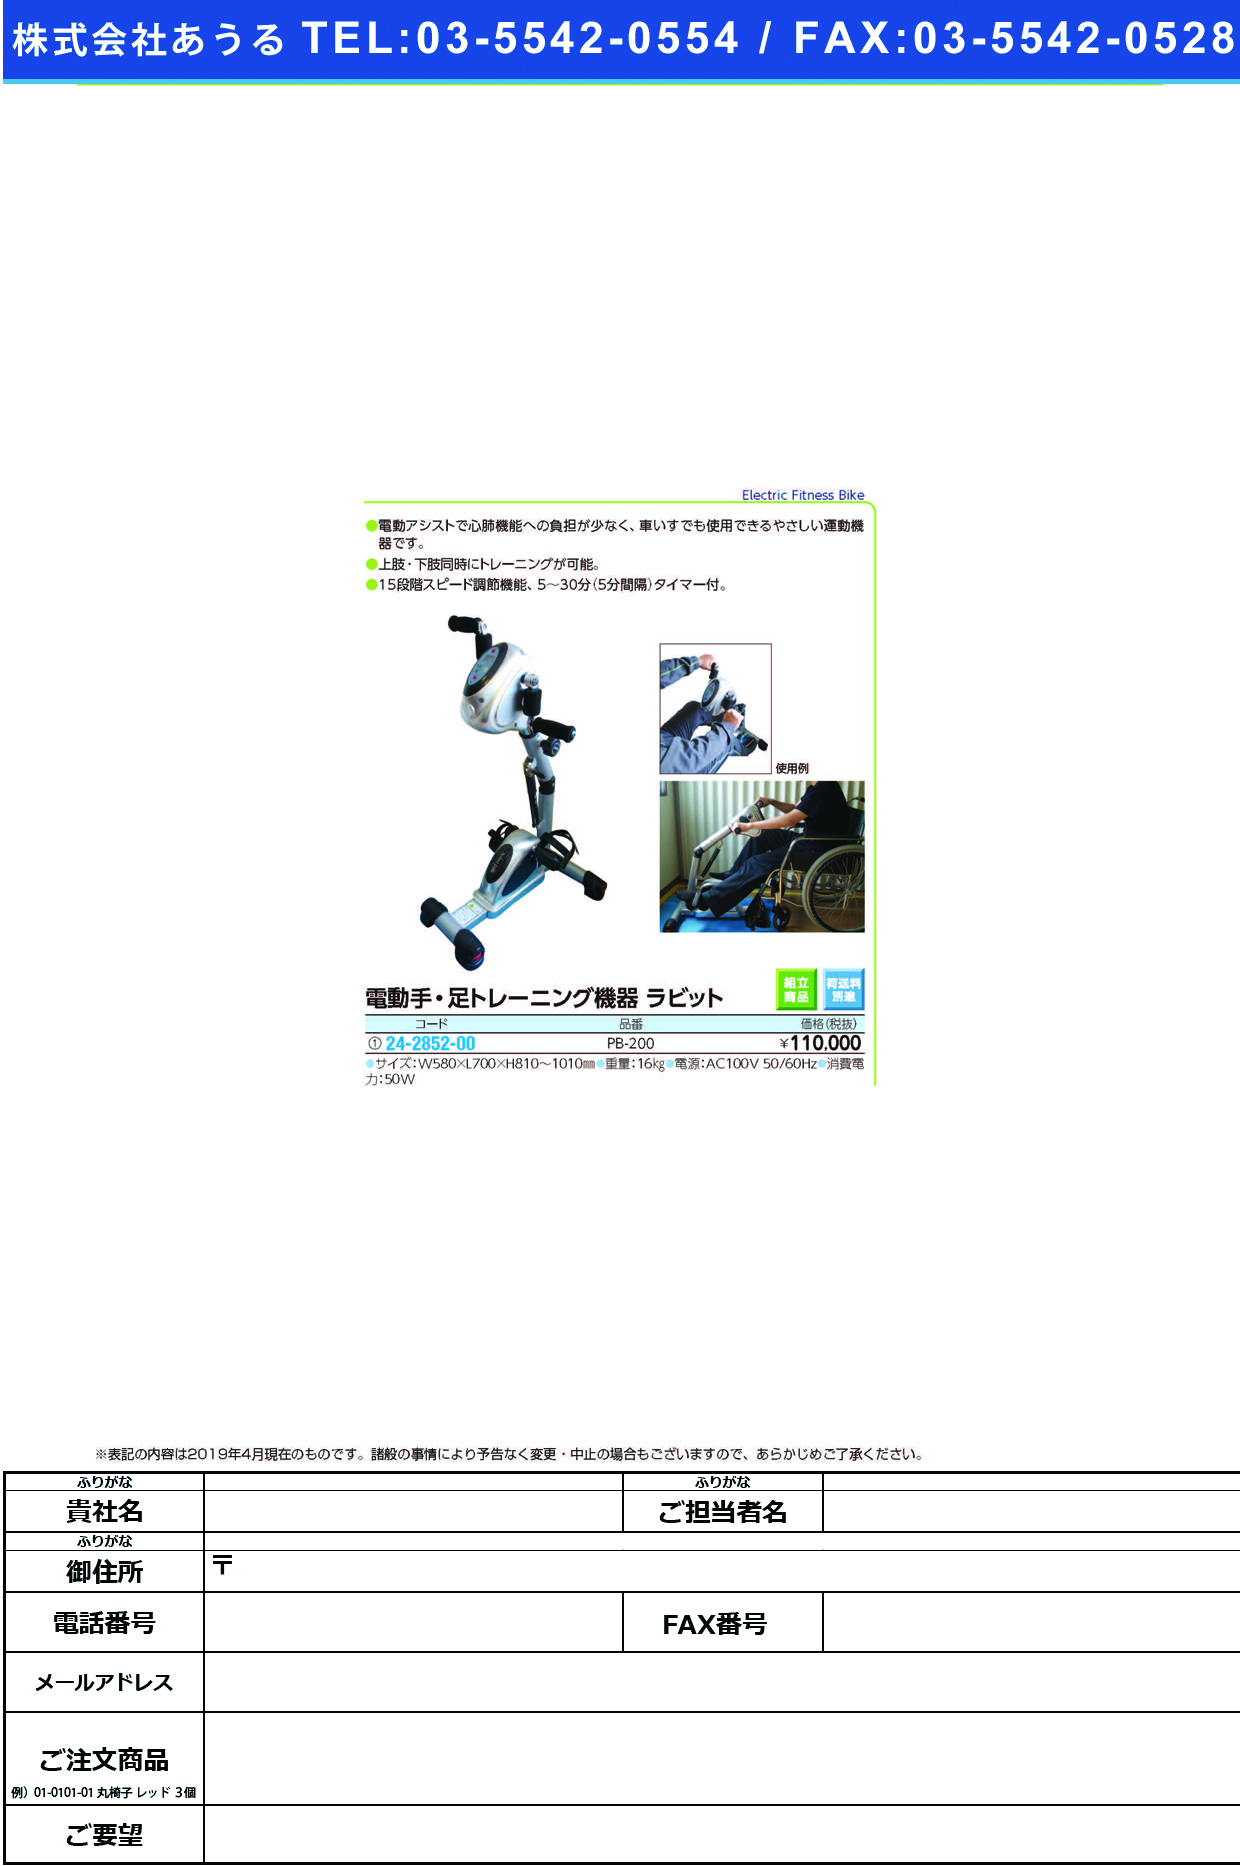 (24-2852-00)手・足トレーニングマシンラビット PB-200 ﾃｱｼﾄﾚｰﾆﾝｸﾞﾏｼﾝﾗﾋﾞｯﾄ【1台単位】【2019年カタログ商品】